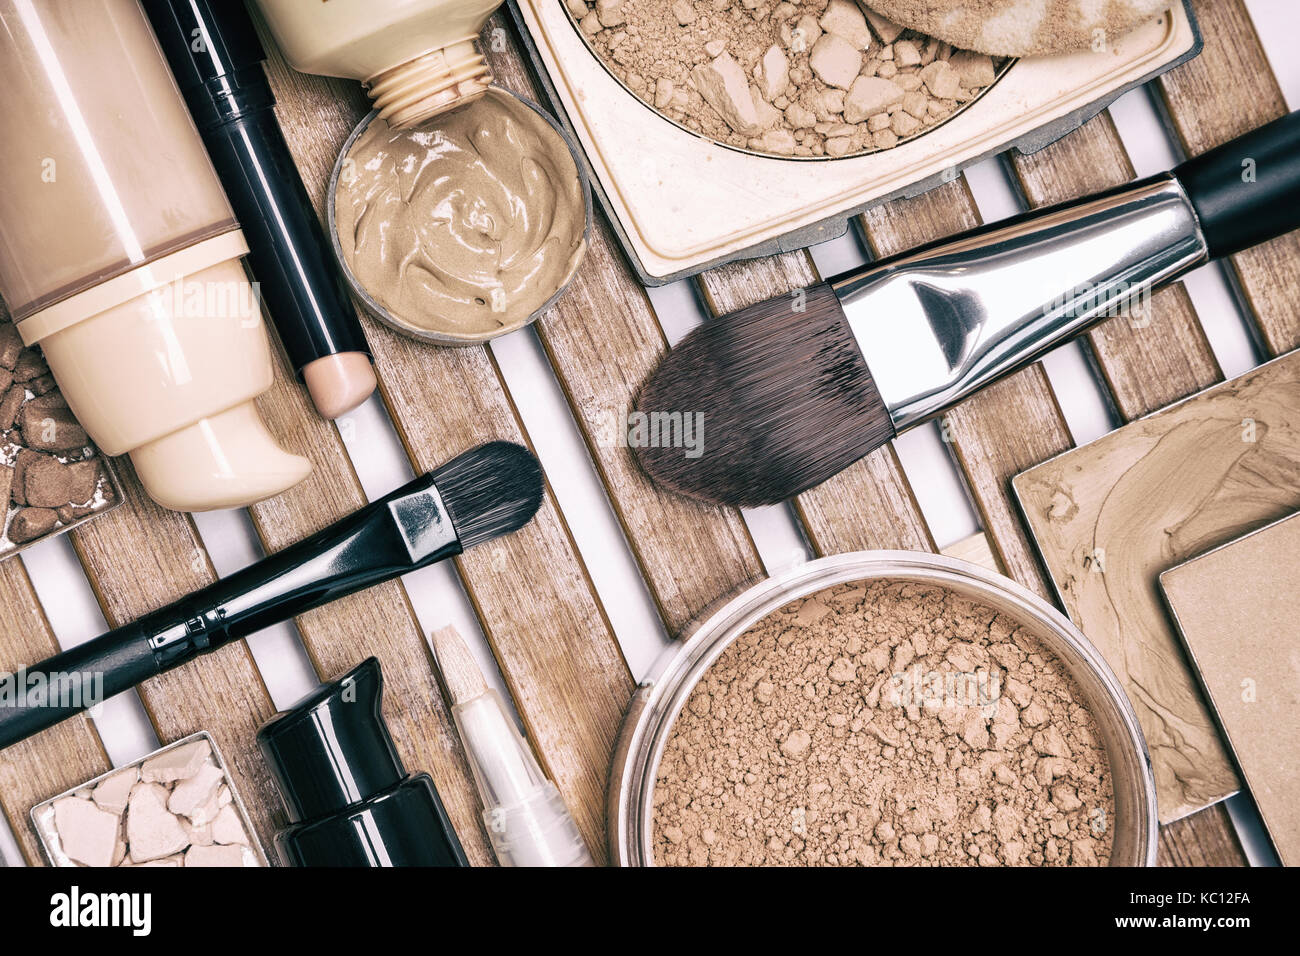 Satz von FOUNDATION Make-up-Produkte auf Holz Stativ. concealer Stick,  Grundierung, Flüssigkeit und Creme Foundation, verschiedene Arten von  Pulver, Pinsel Stockfotografie - Alamy